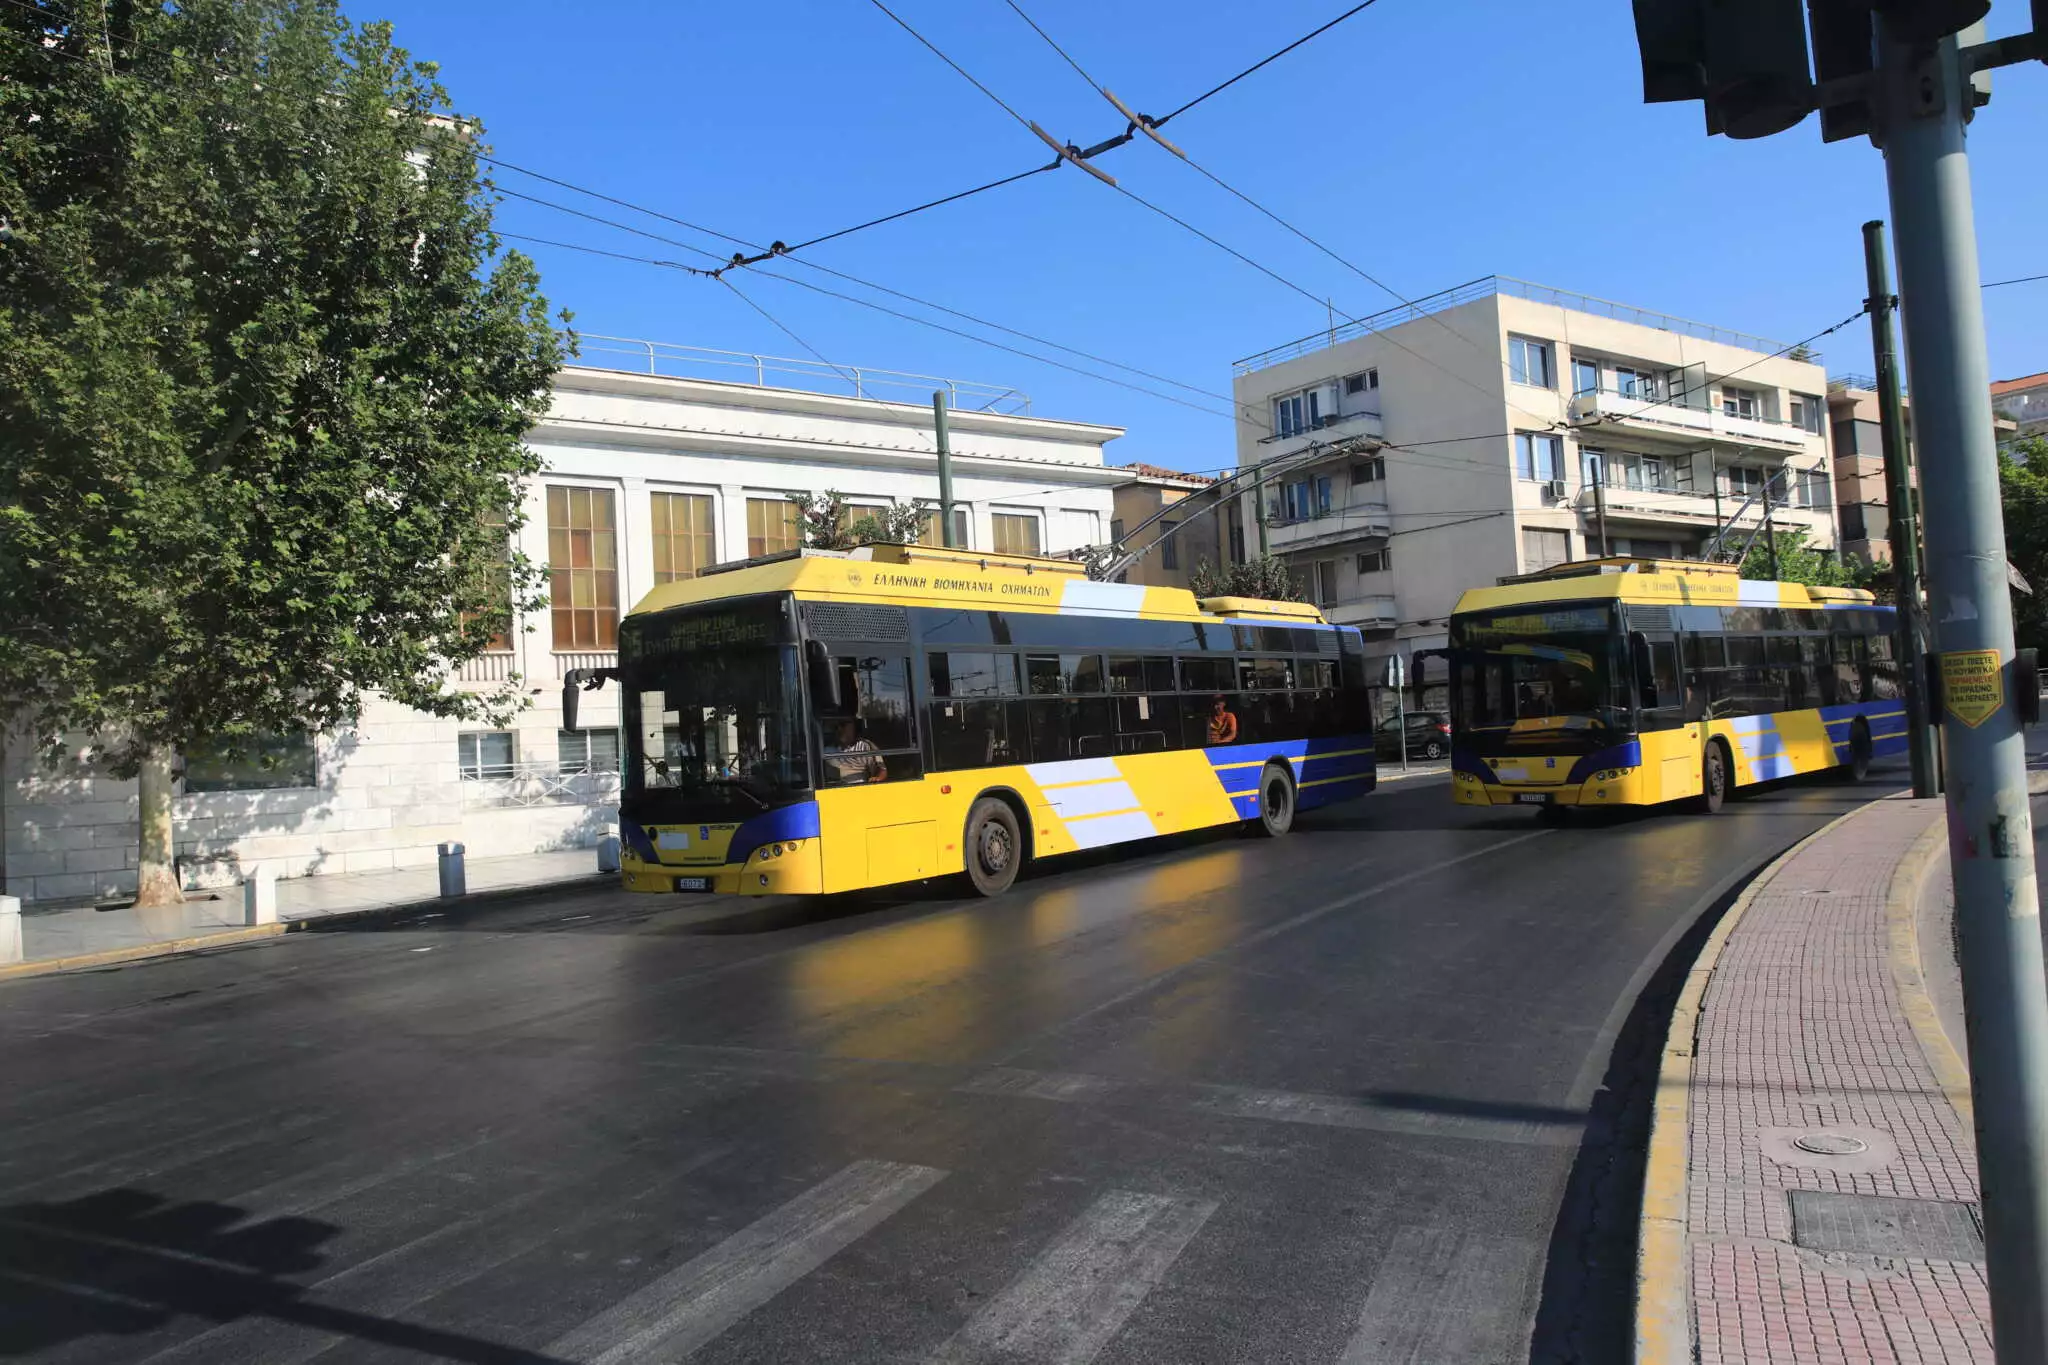 ΕΚΤΑΚΤΟ: Τροχαίο με τουριστικό λεωφορείο και τρόλεϊ στην Πανεπιστημίου!